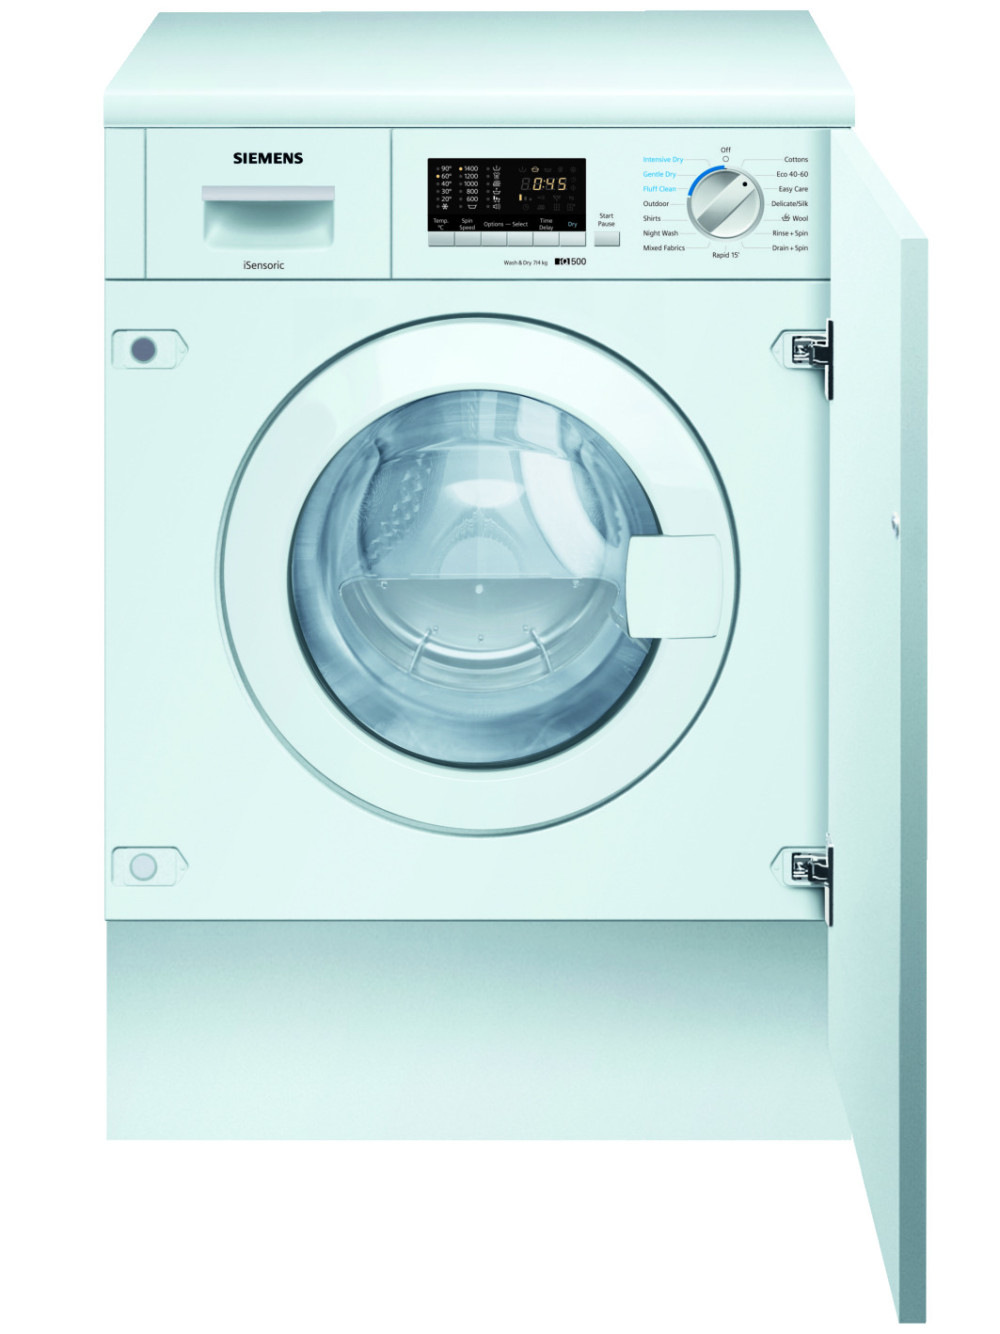 Siemens WK14D543GB Washer Dryer featured image